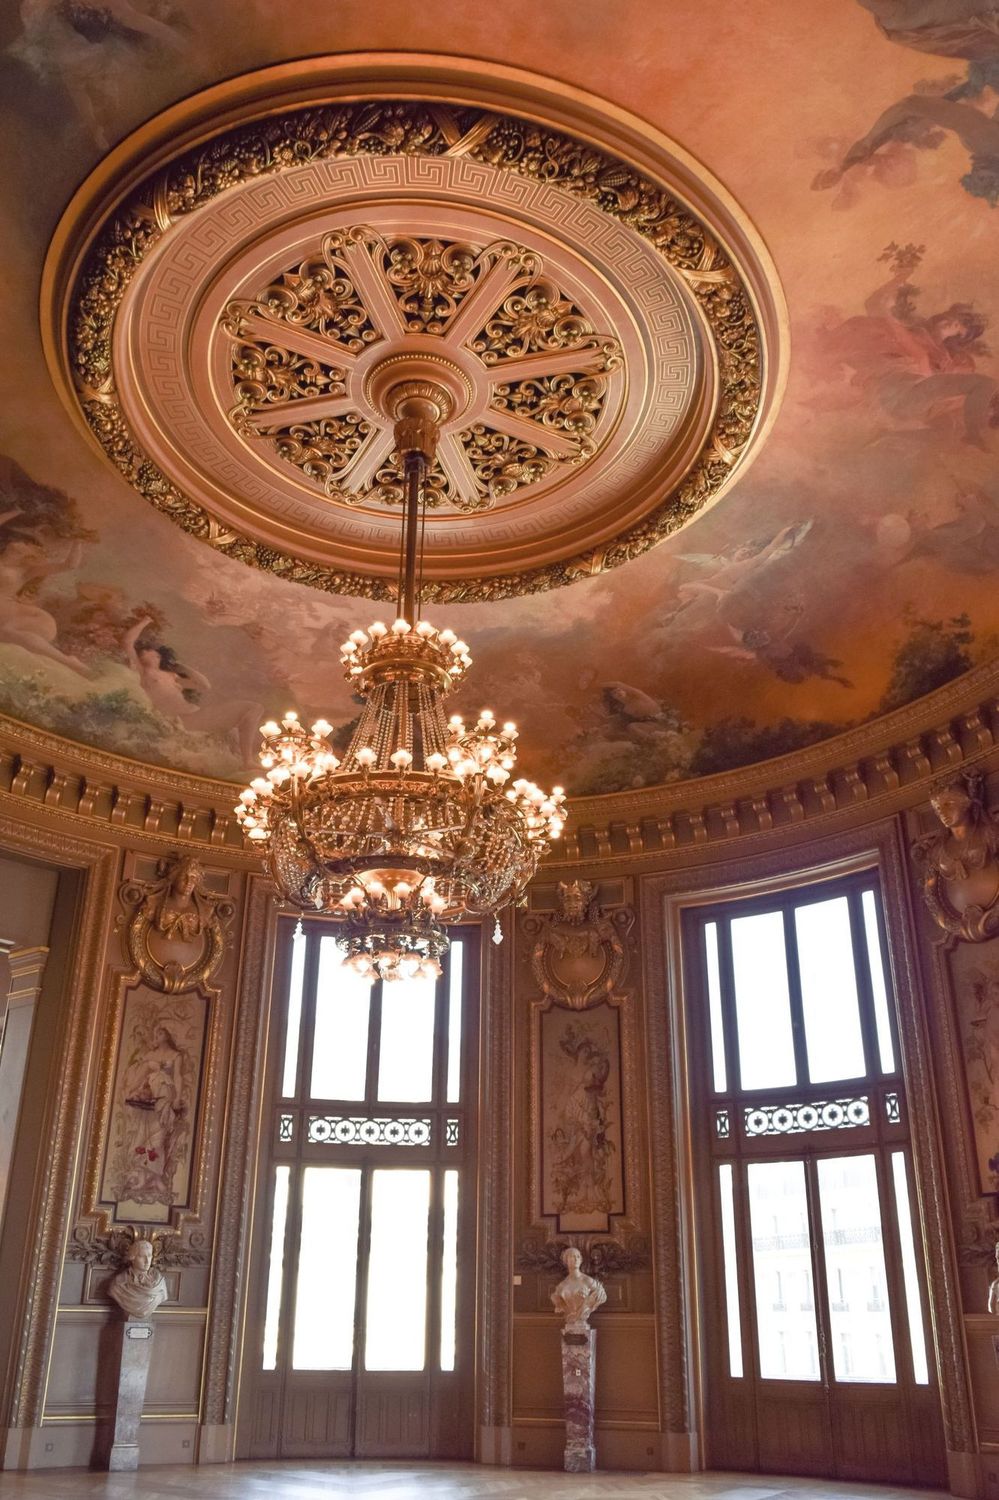 Chandelier in Round Room at the Palais Garnier Paris